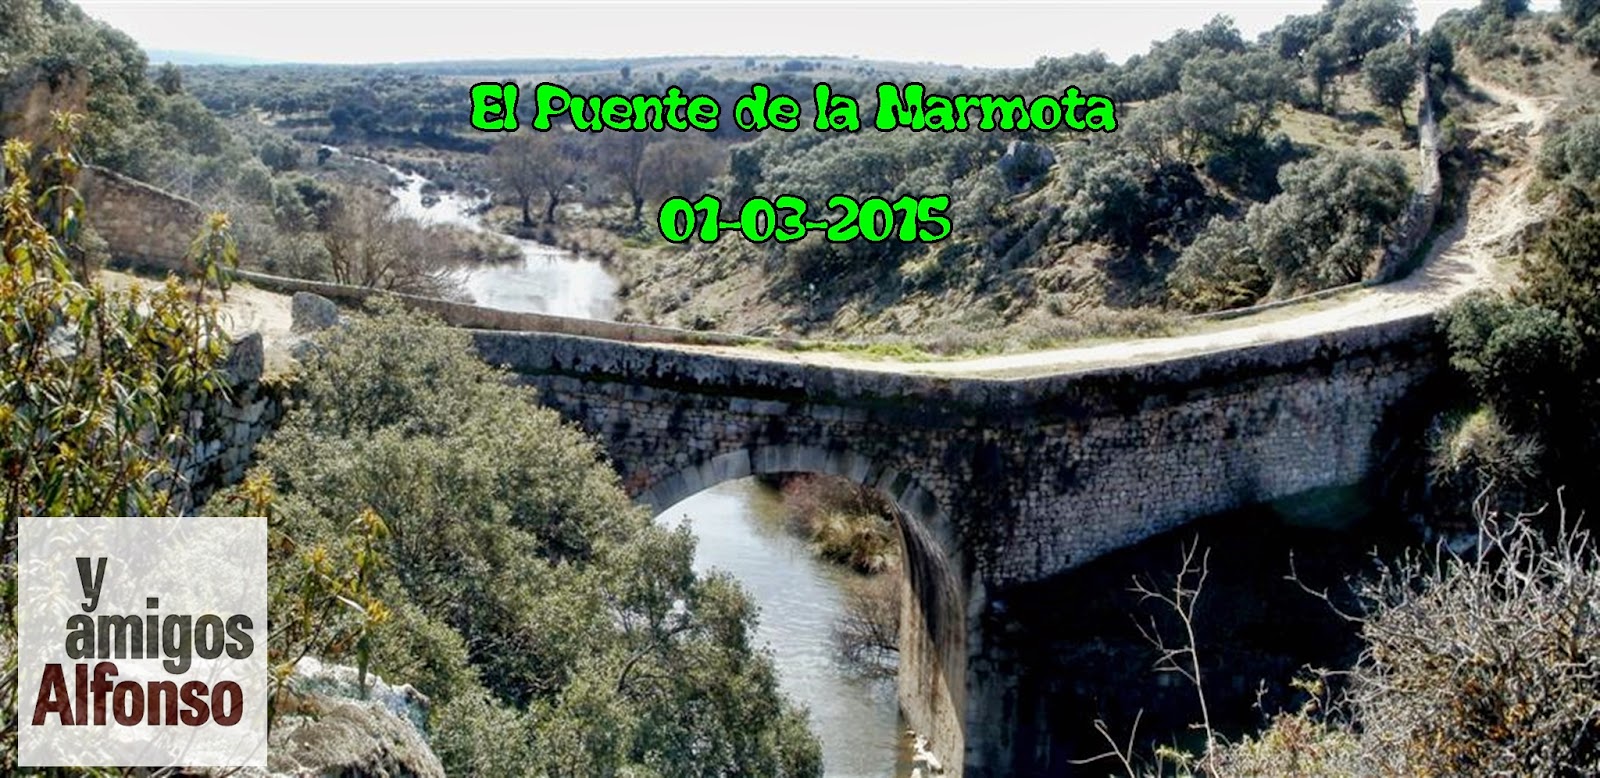 Puente de la Marmota - Alfonsoyamigos